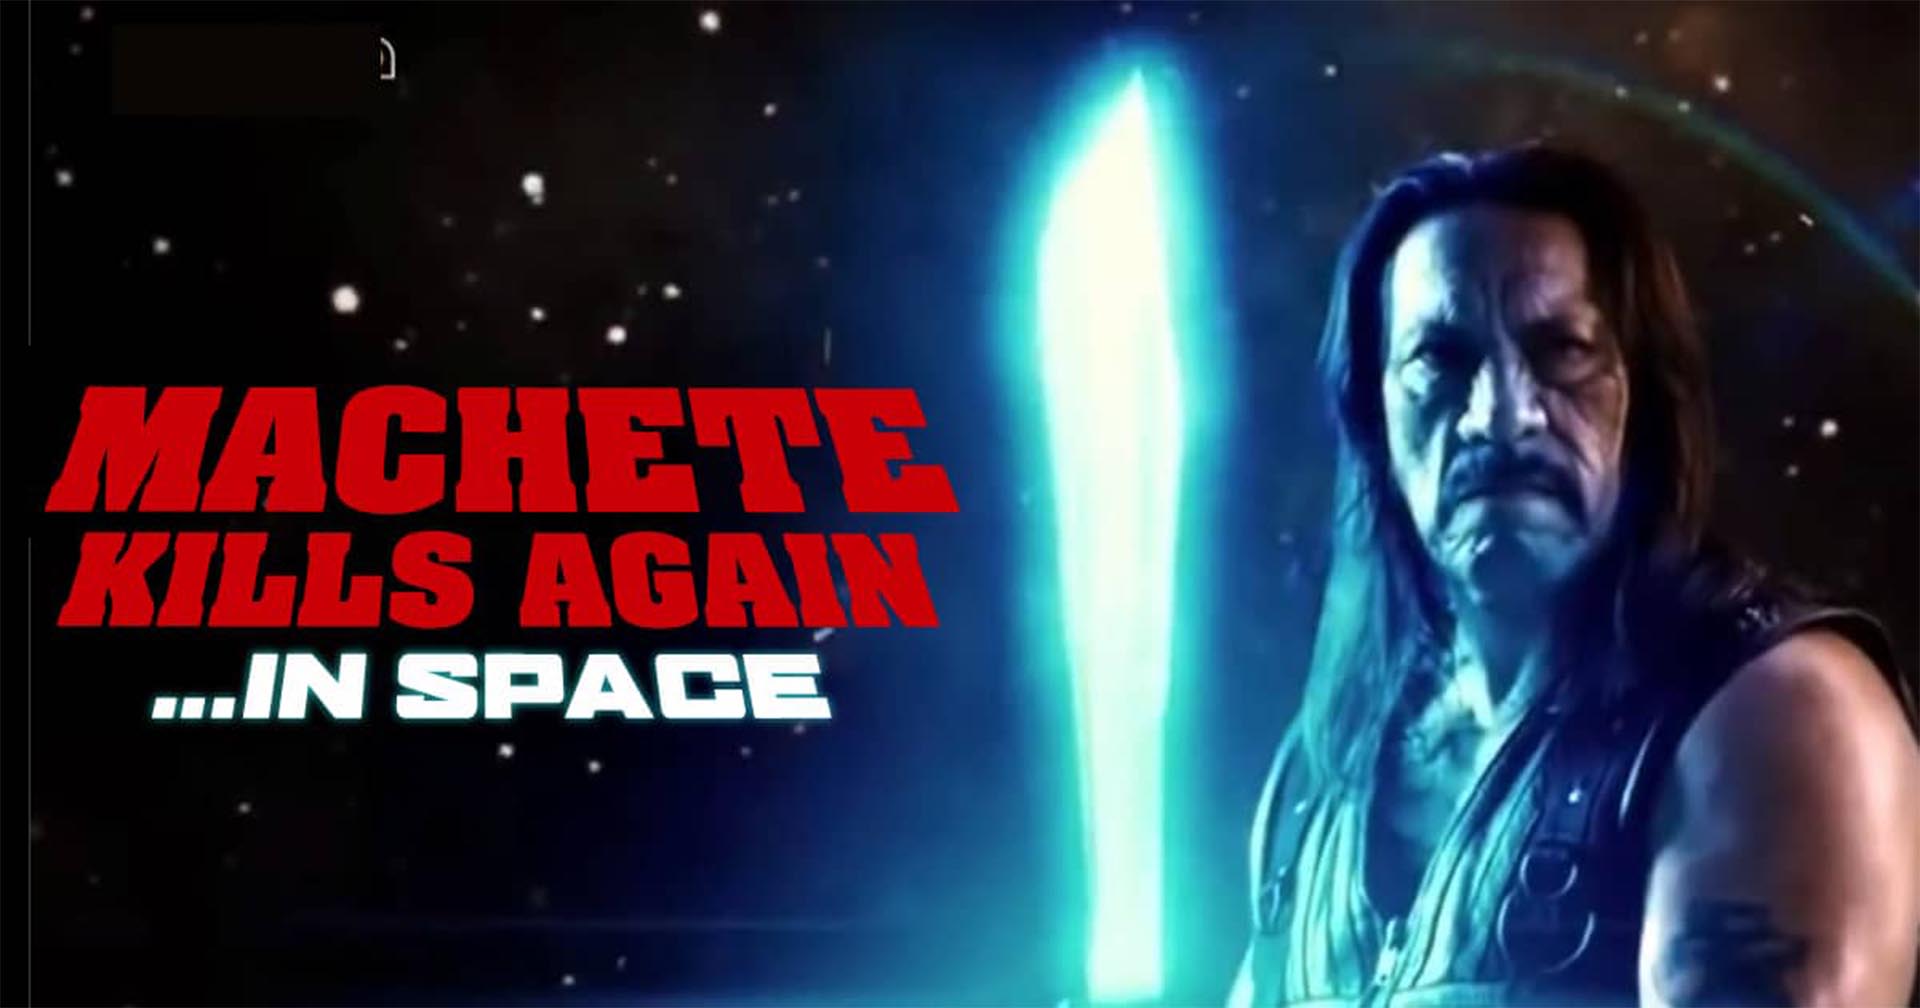 ผู้กำกับ Robert Rodriguez เผย ถึงเวลาที่เขาต้องทำ Machete Kills Again… In Space ออกมาแล้ว